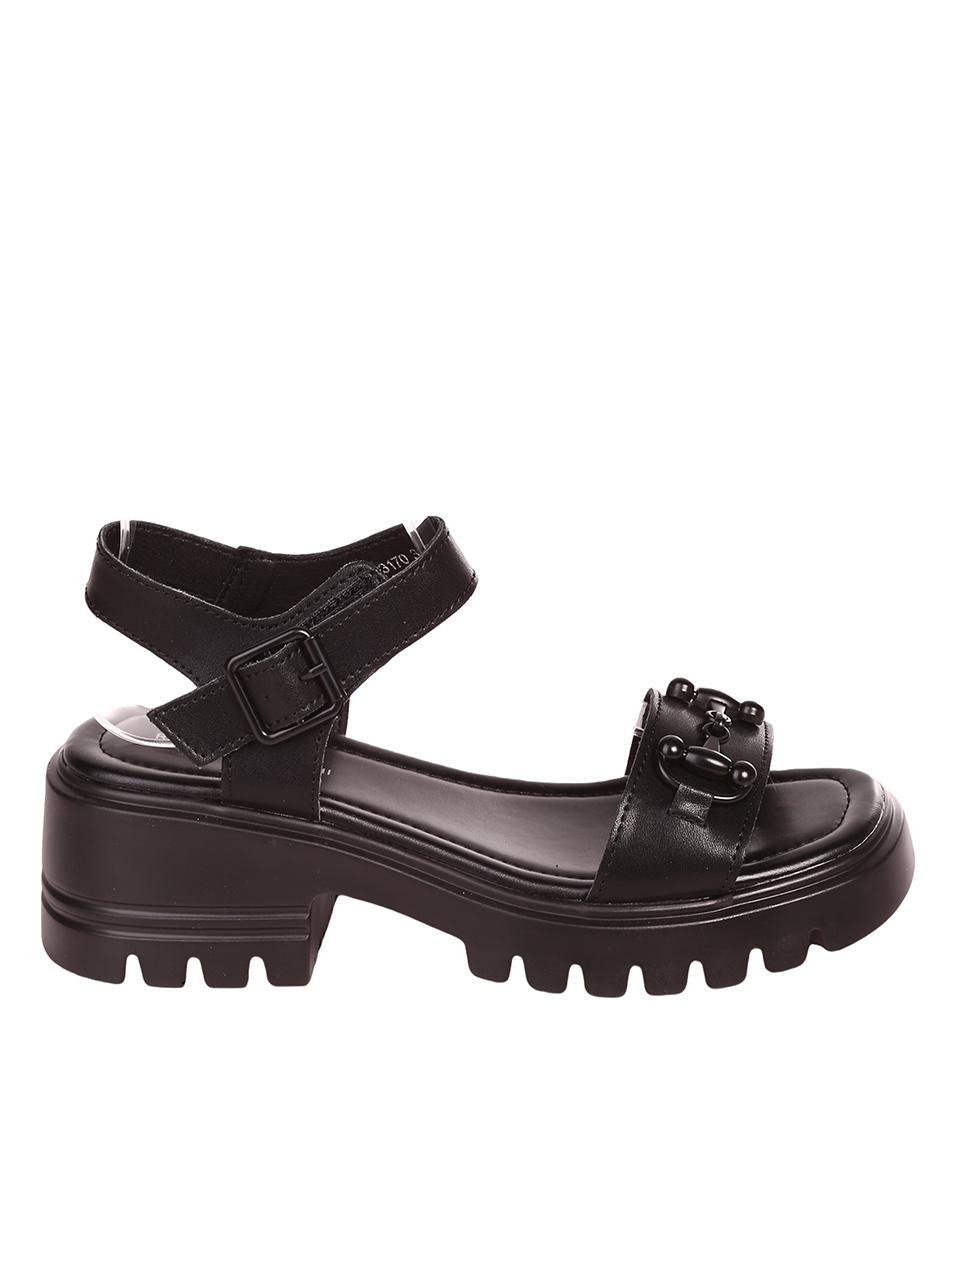 Ежедневни дамски сандали на платформа от естествена кожа 4AF-23170 black